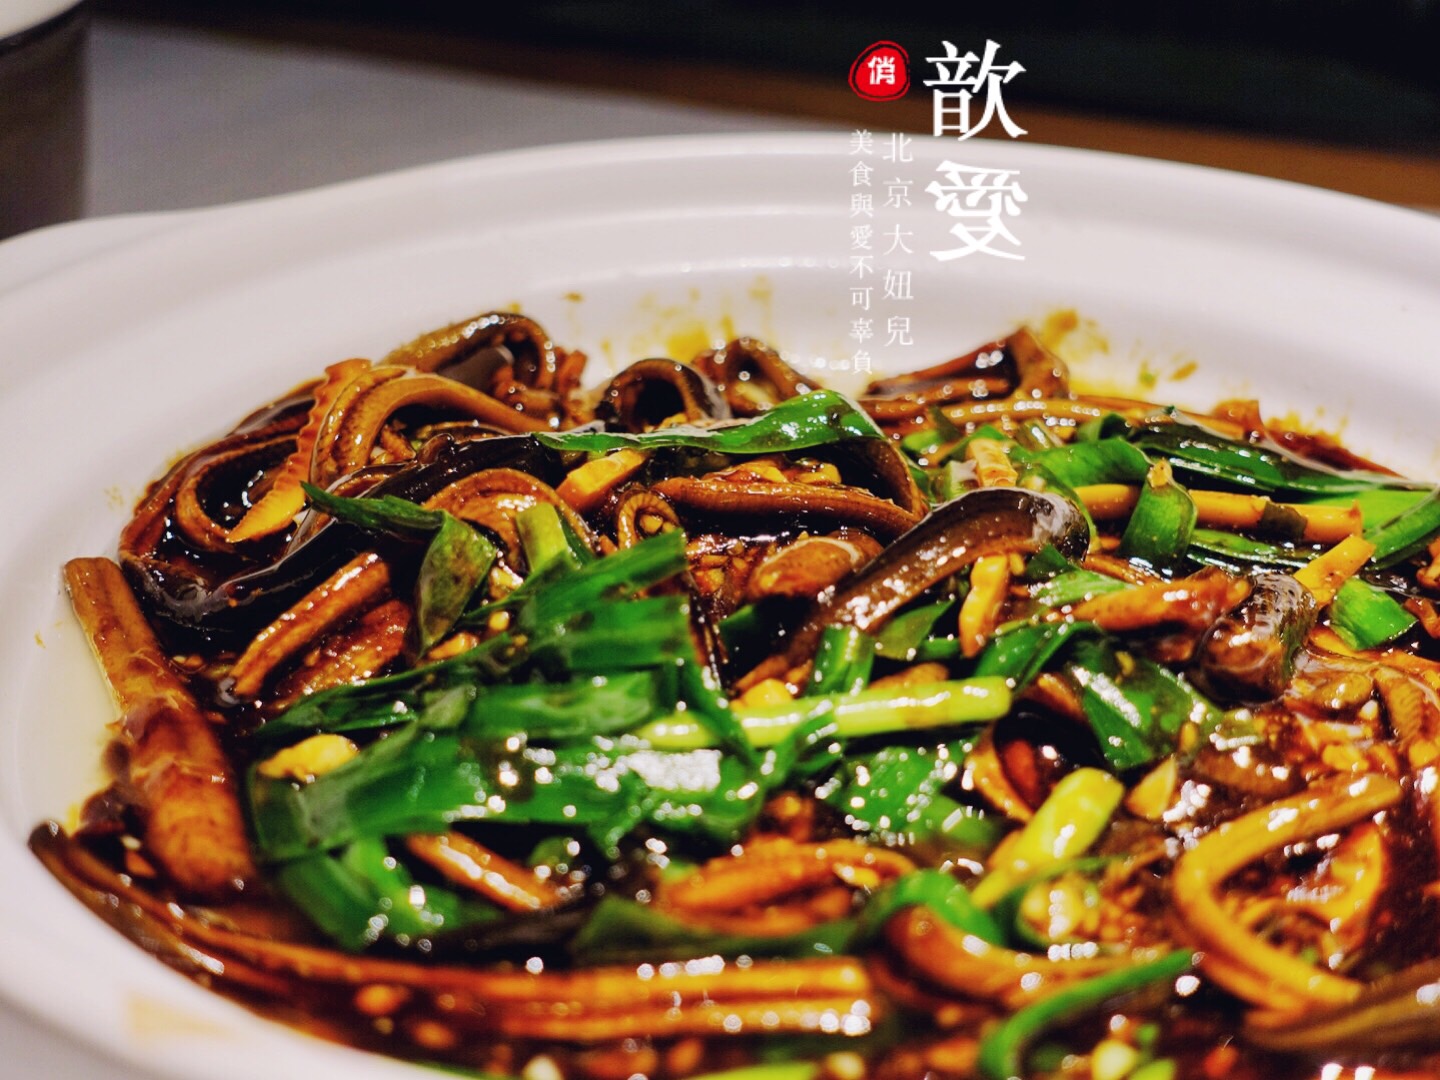 这家游园京梦是淮扬府的子品牌更是今年必吃榜的餐厅煮干丝和韭菜炒